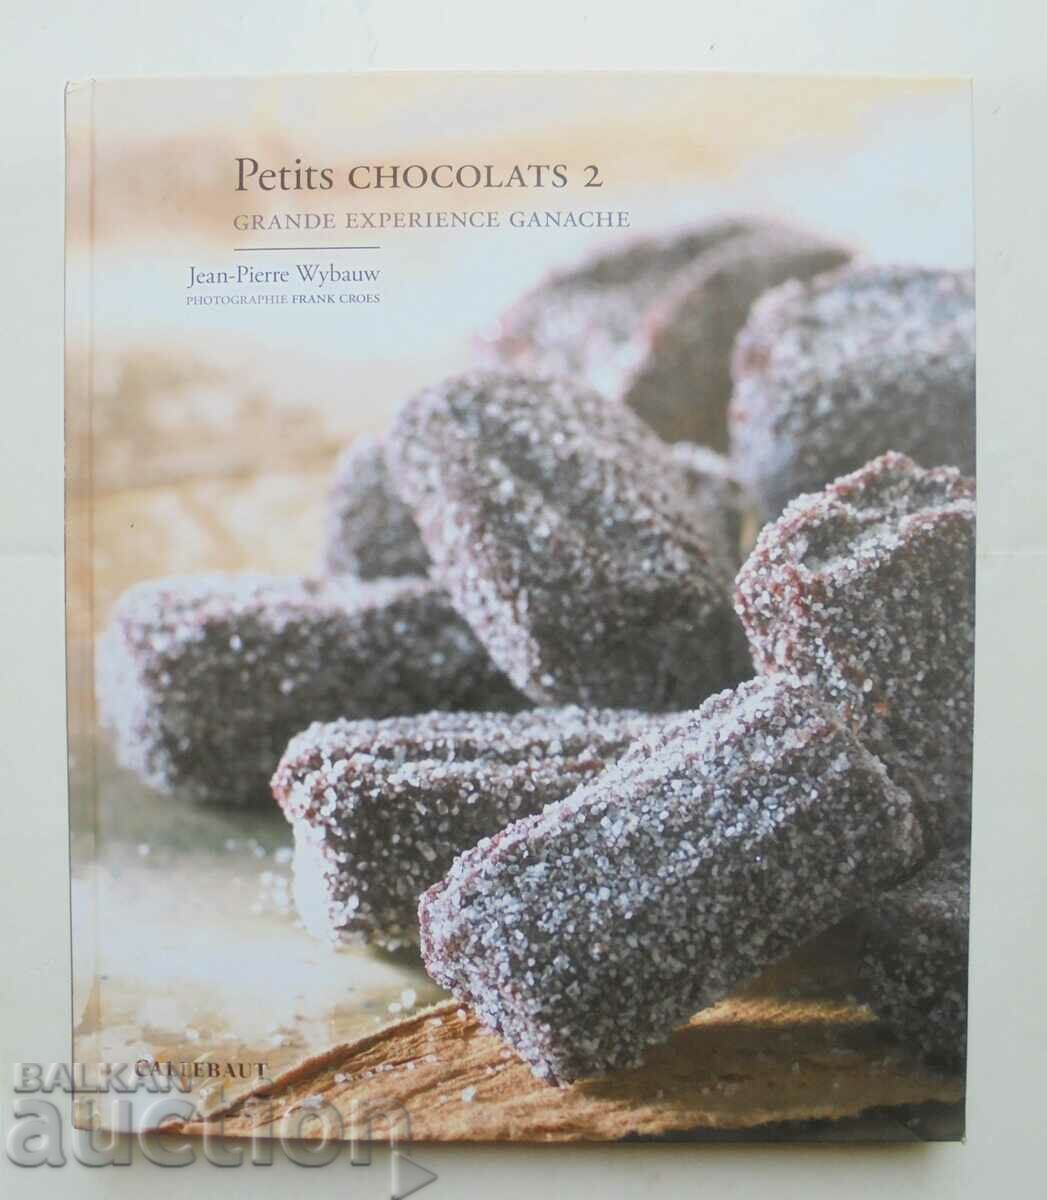 Petits chocolats 2 - Jean-Pierre Wybauw 2007